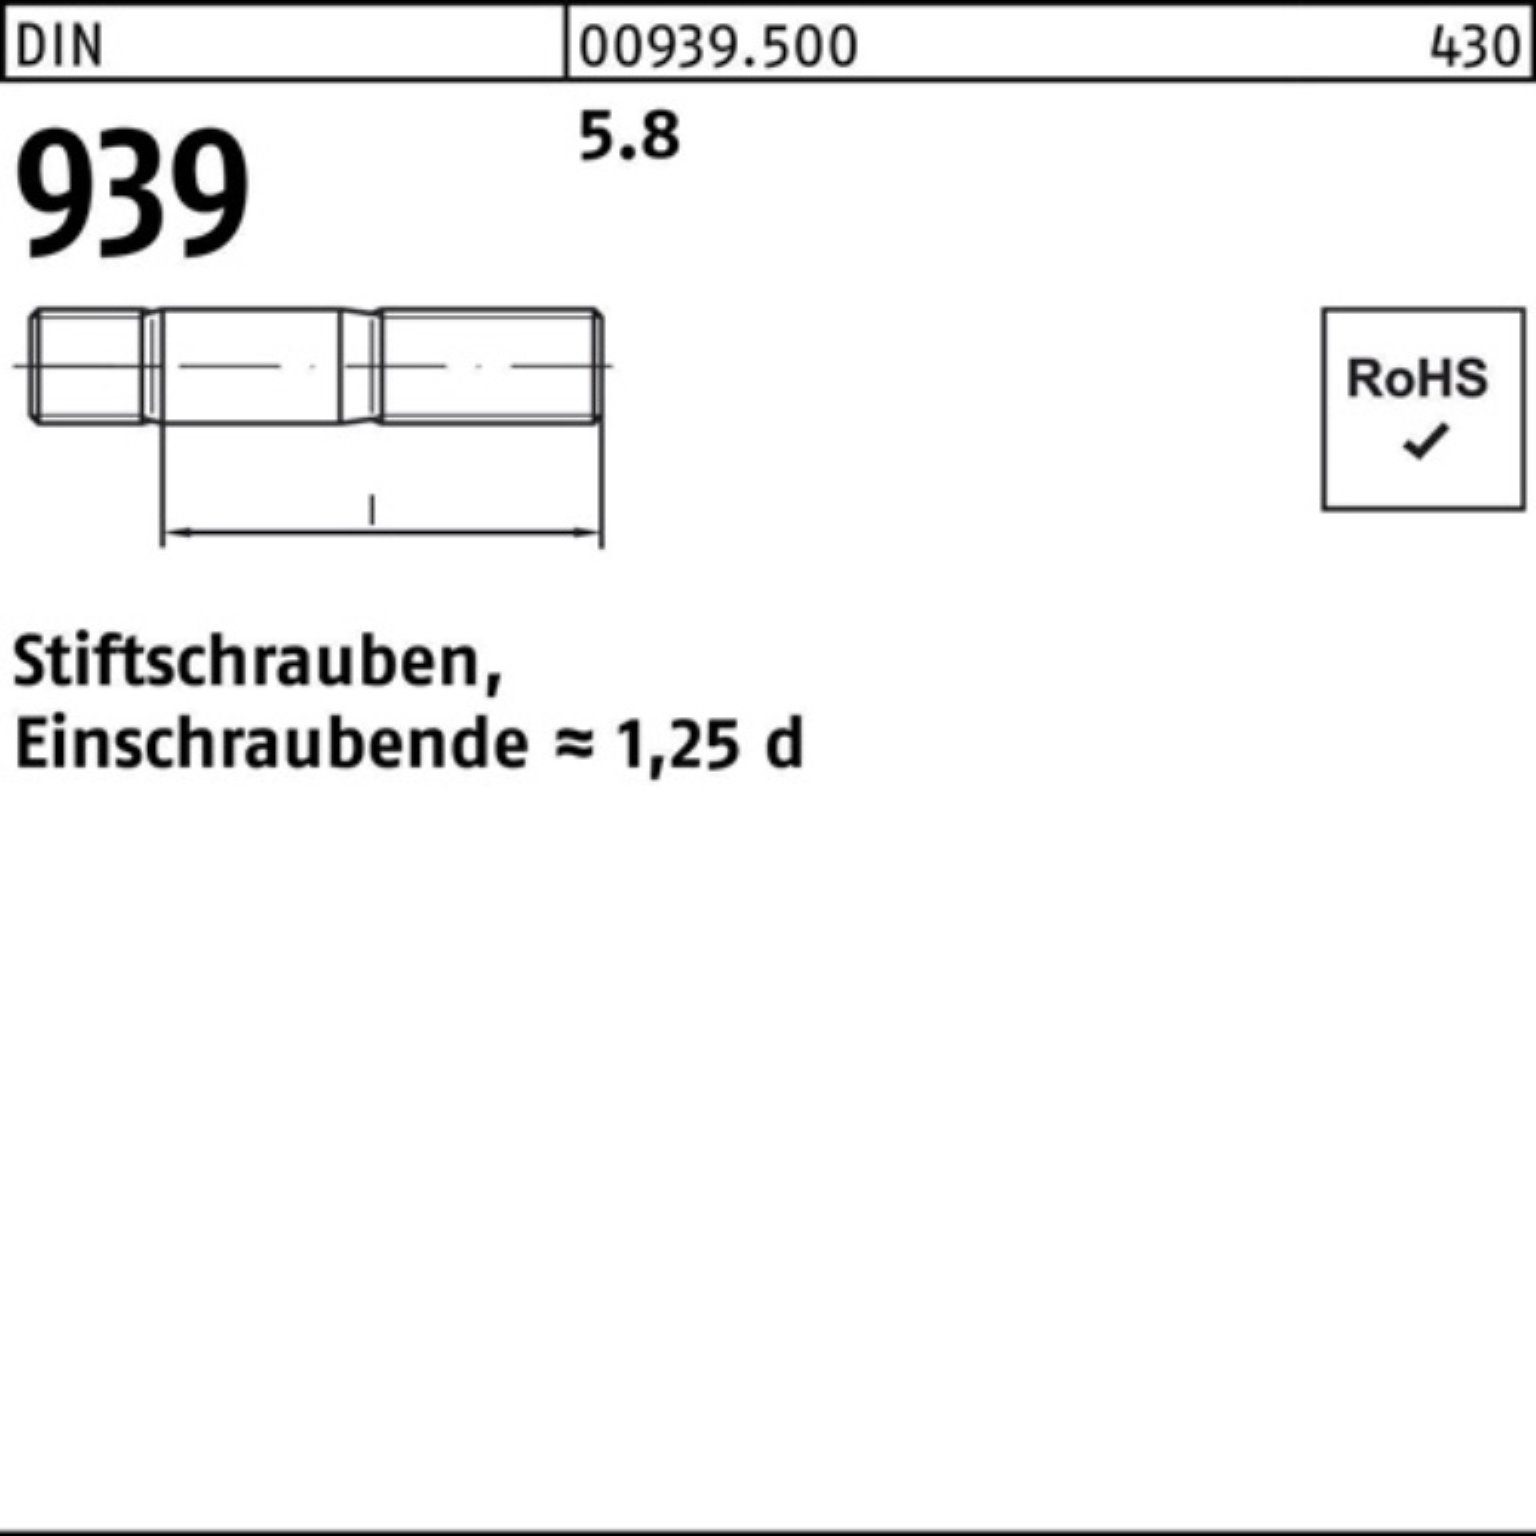 100 100er M12x Einschraubende=1,25d Stiftschraube DIN Pack Stiftschraube Reyher 5.8 939 20